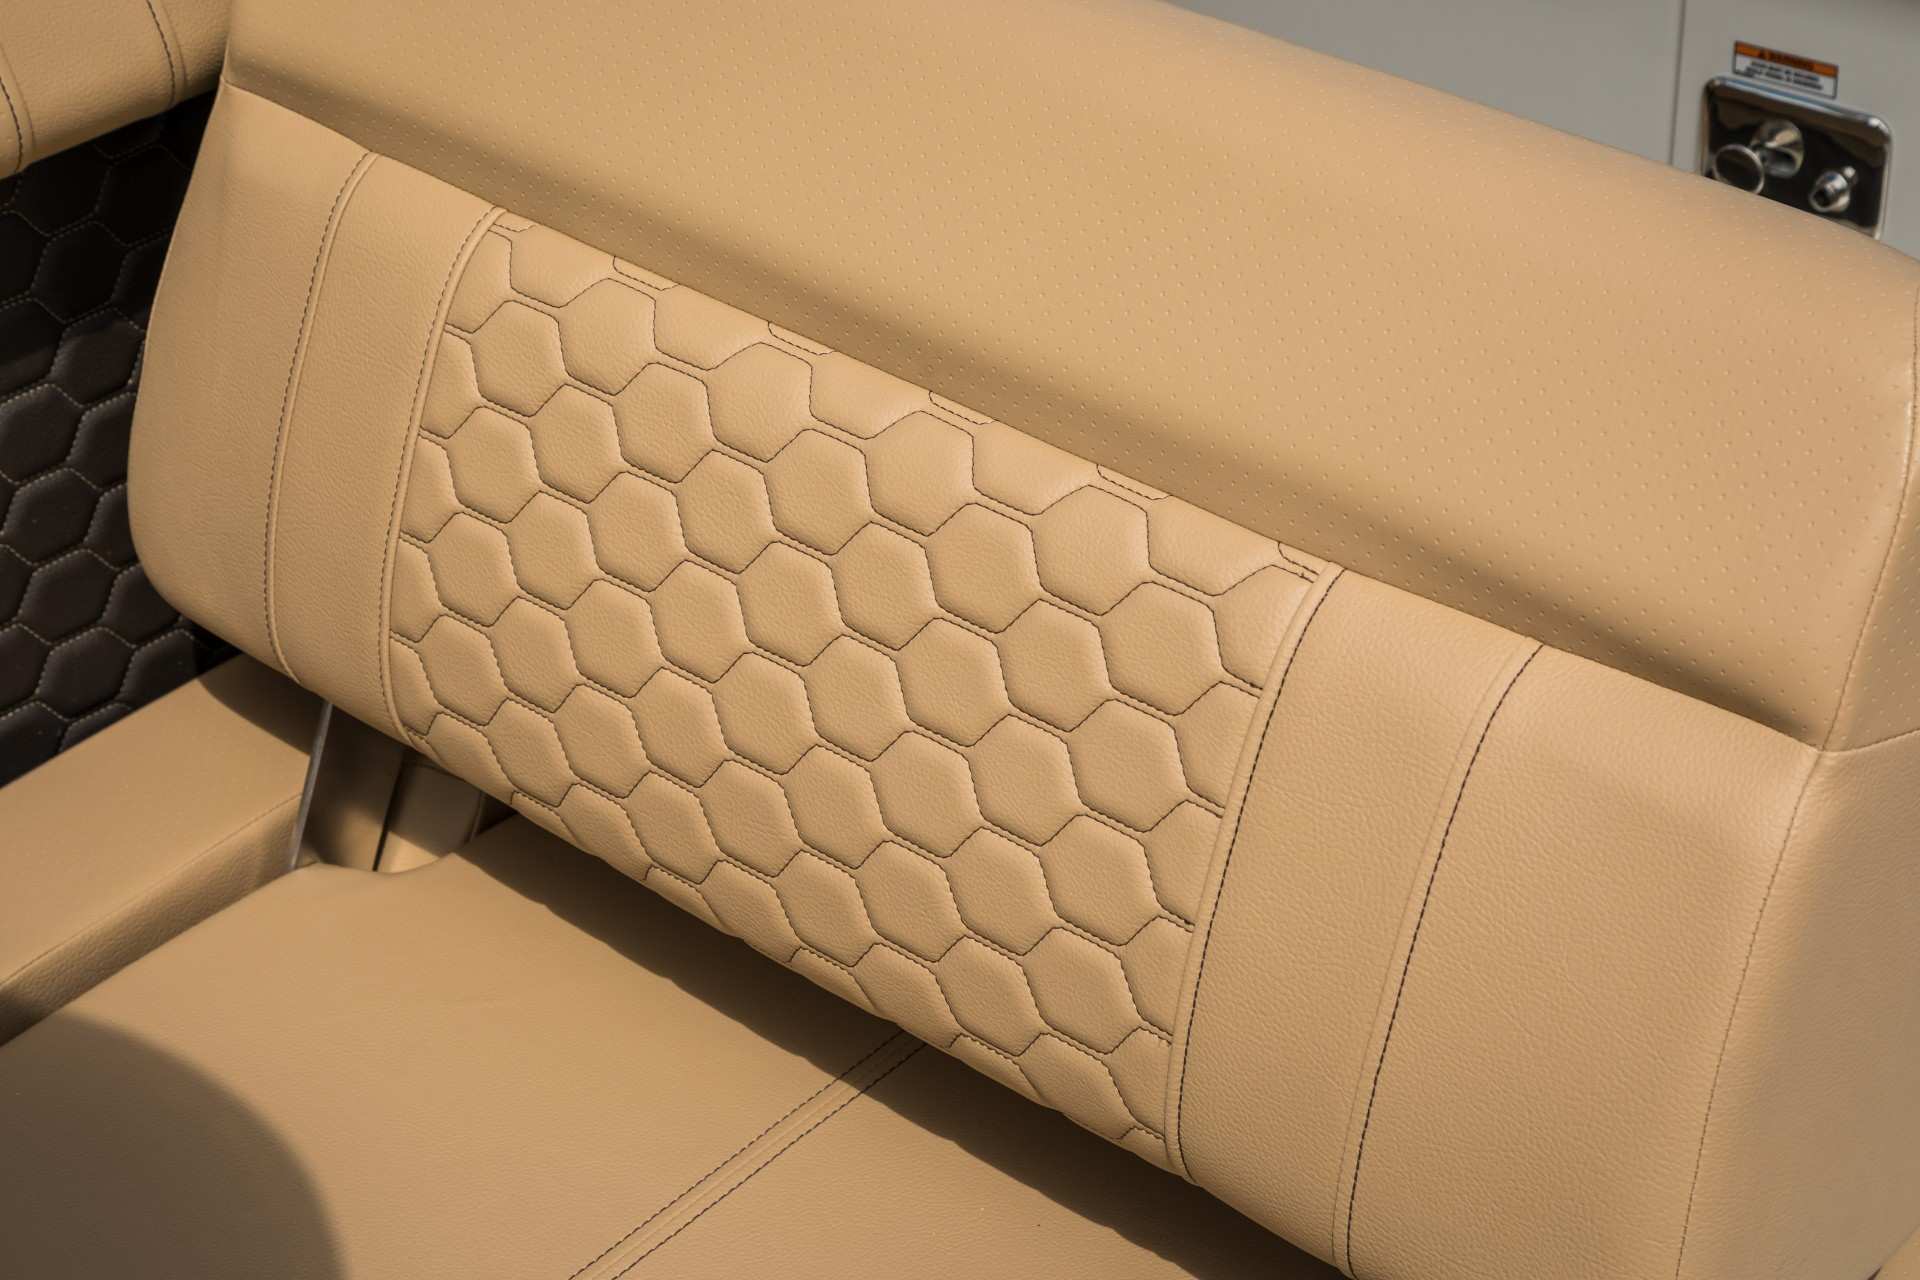 SDX 290 upholstery